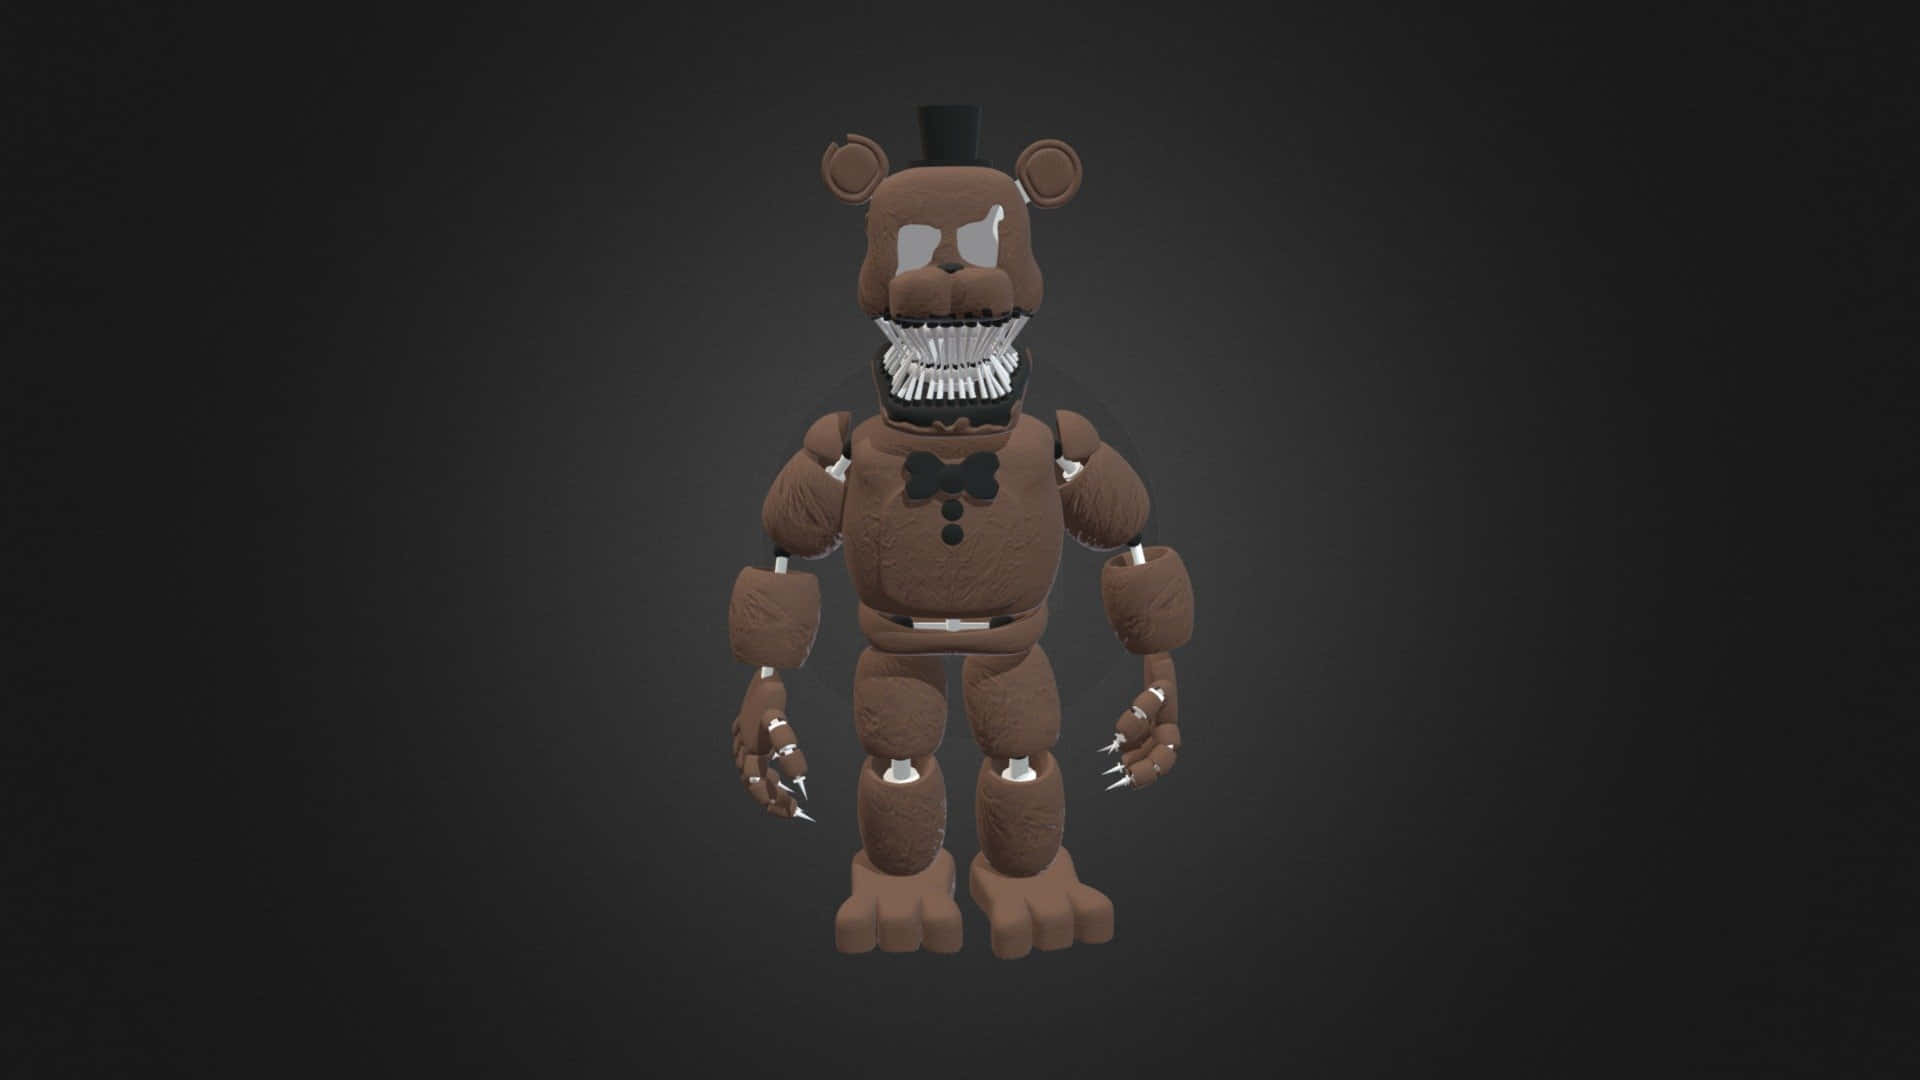 Ein3d-modell Eines Bären Aus Five Nights At Freddy's.